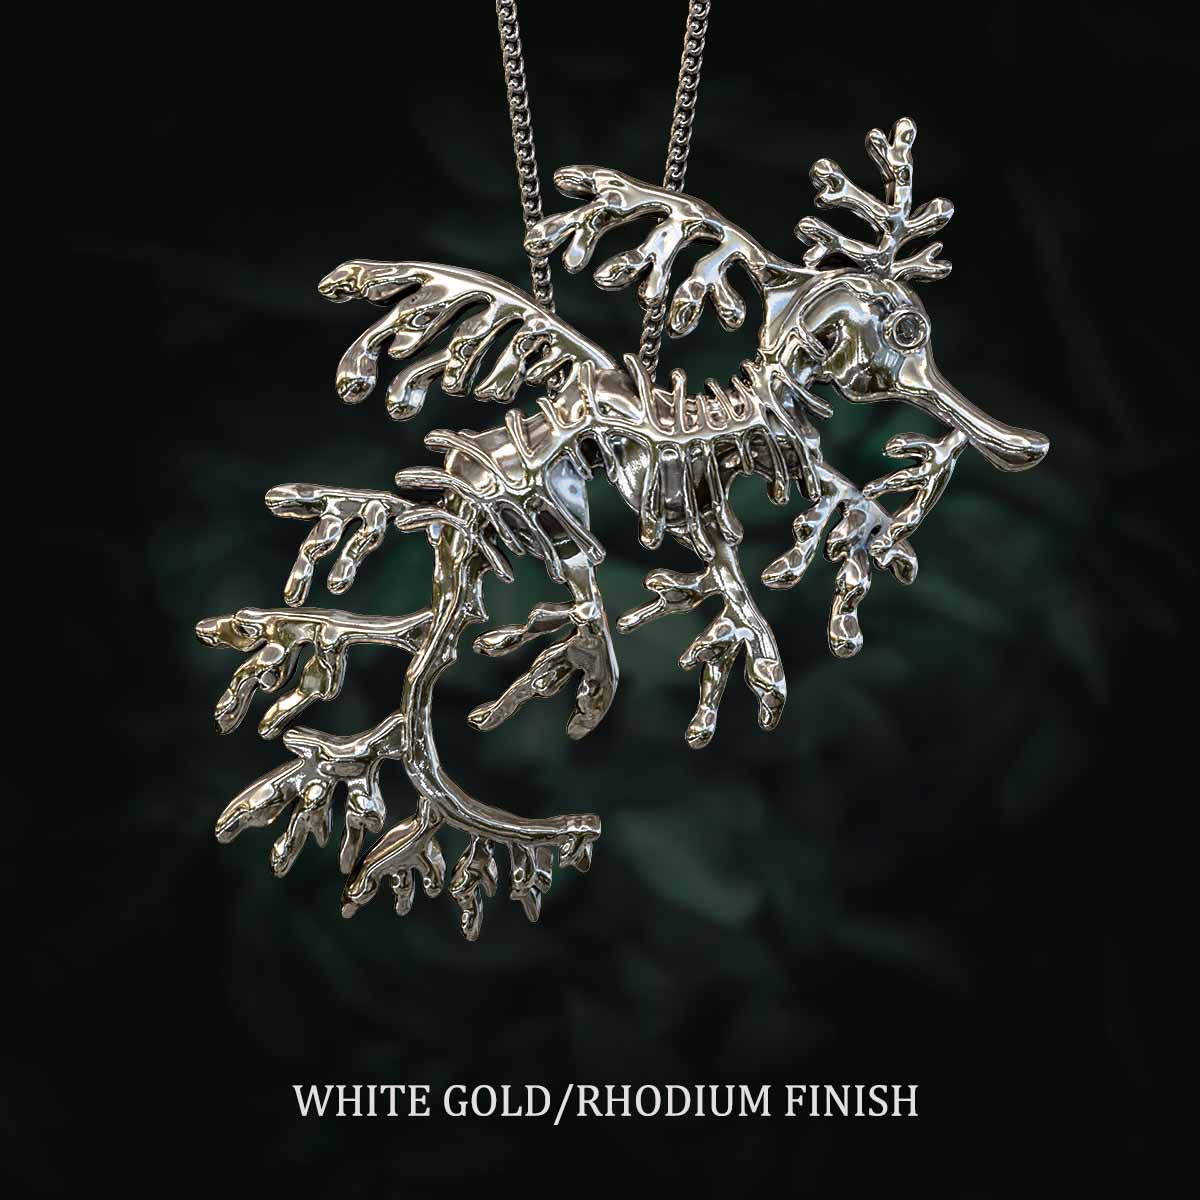 White-Gold-Rhodium-Finish-Leafy-Sea-Dragon-Pendant-Jewelry-For-Necklace